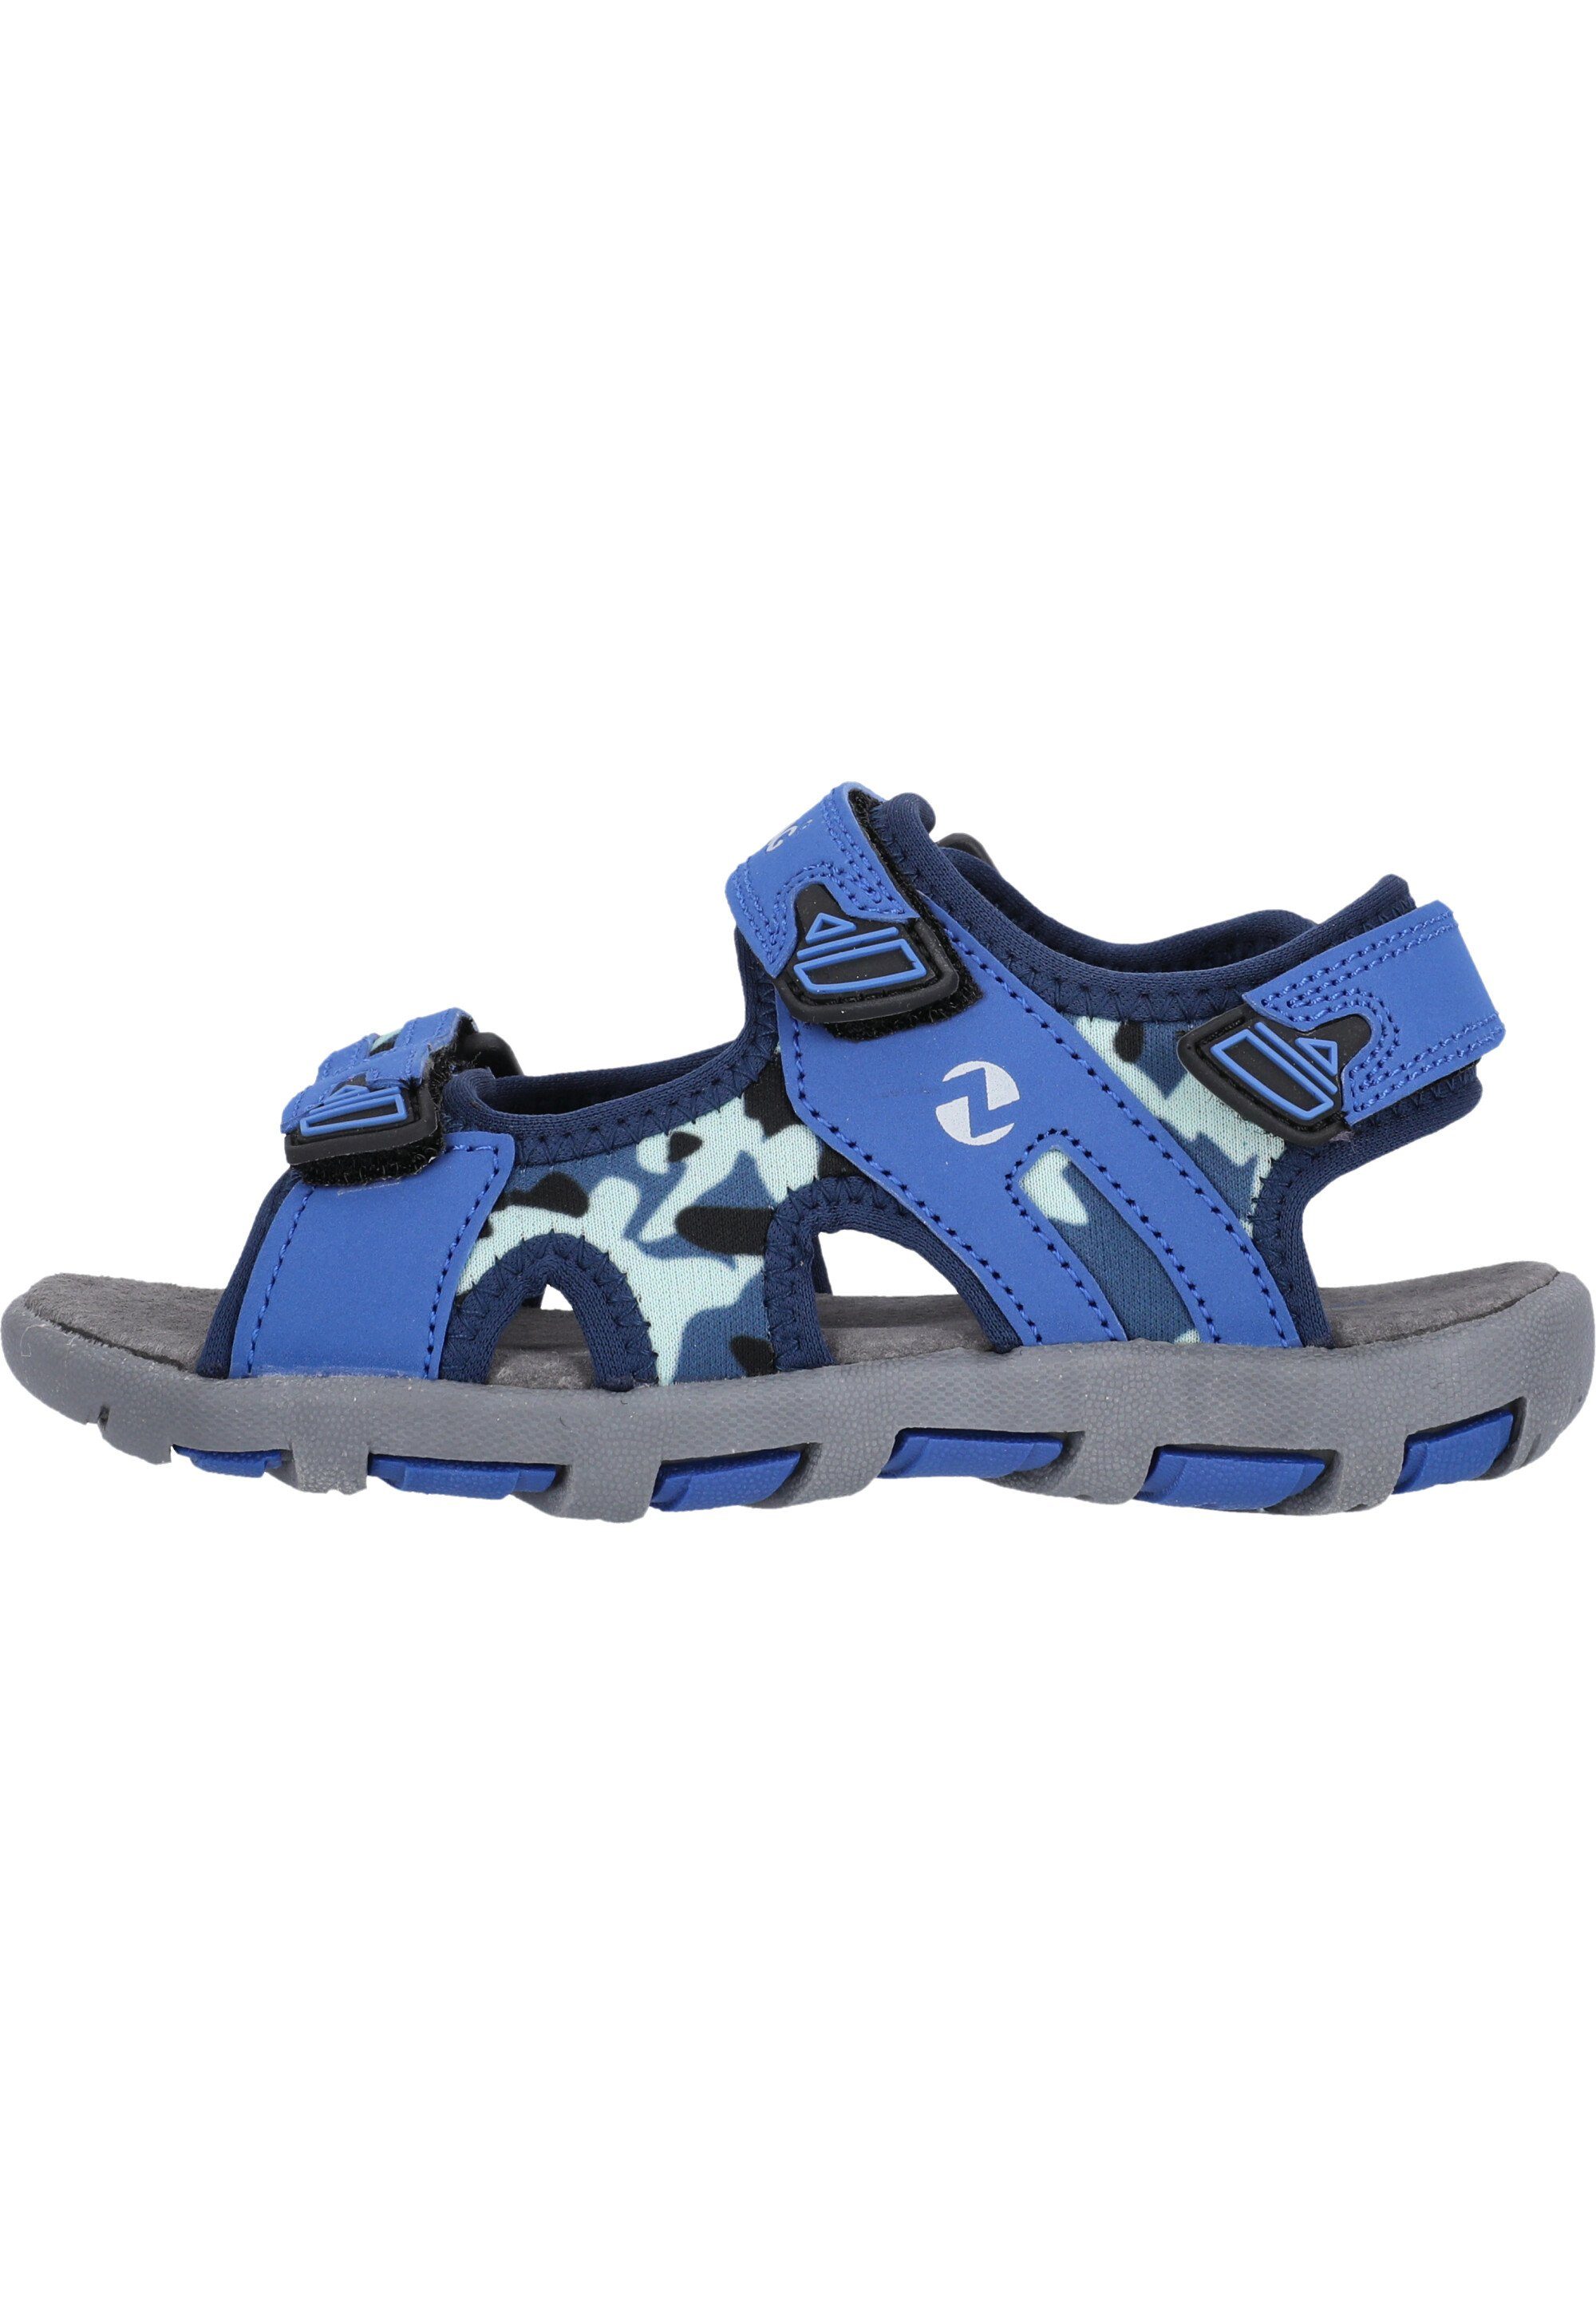 ZIGZAG Tanaka Sandale blau-blau Klettverschluss praktischem mit